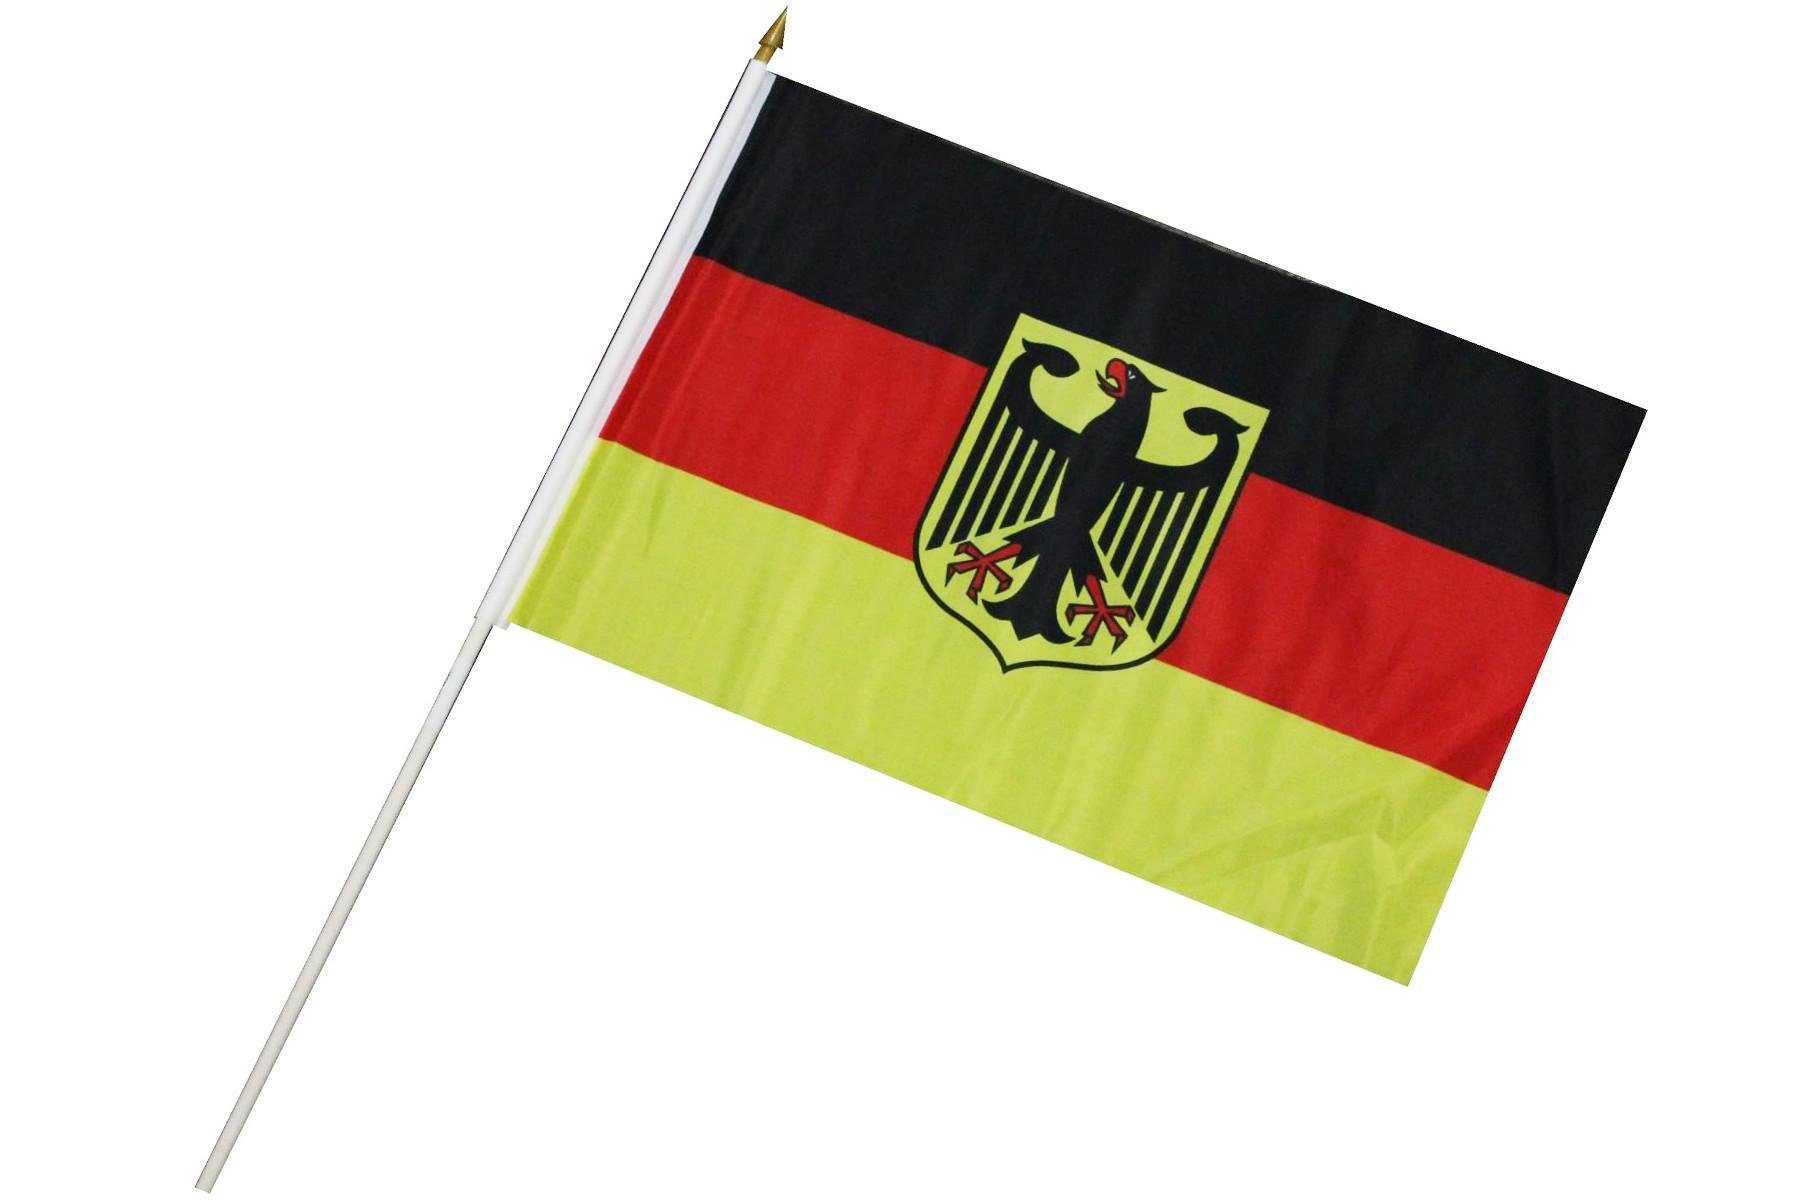 ELLUG Flagge Fahne Flagge 30 x 45cm mit Holzstab Höhe 60cm Handfahne Stockflagge Banner Fan Deutschland mit Adler | Fahnen